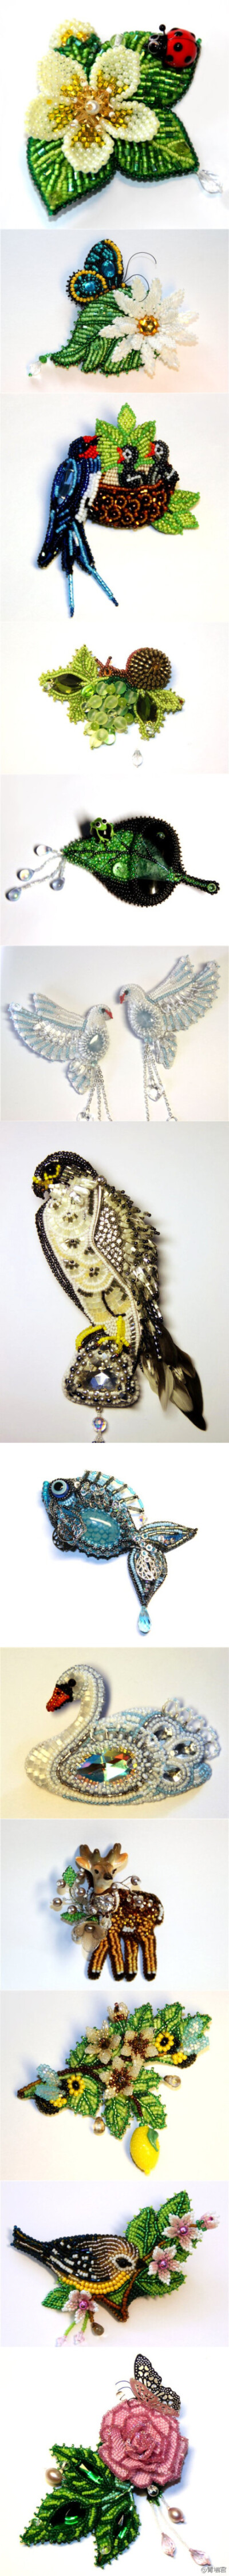 #珠绣#大家看这位达人Любовь Тюрина，我好喜欢她的作品&amp;gt;&amp;lt;，每一个珠绣动物都美爆了啊！more→http://t.cn/z8xjFab